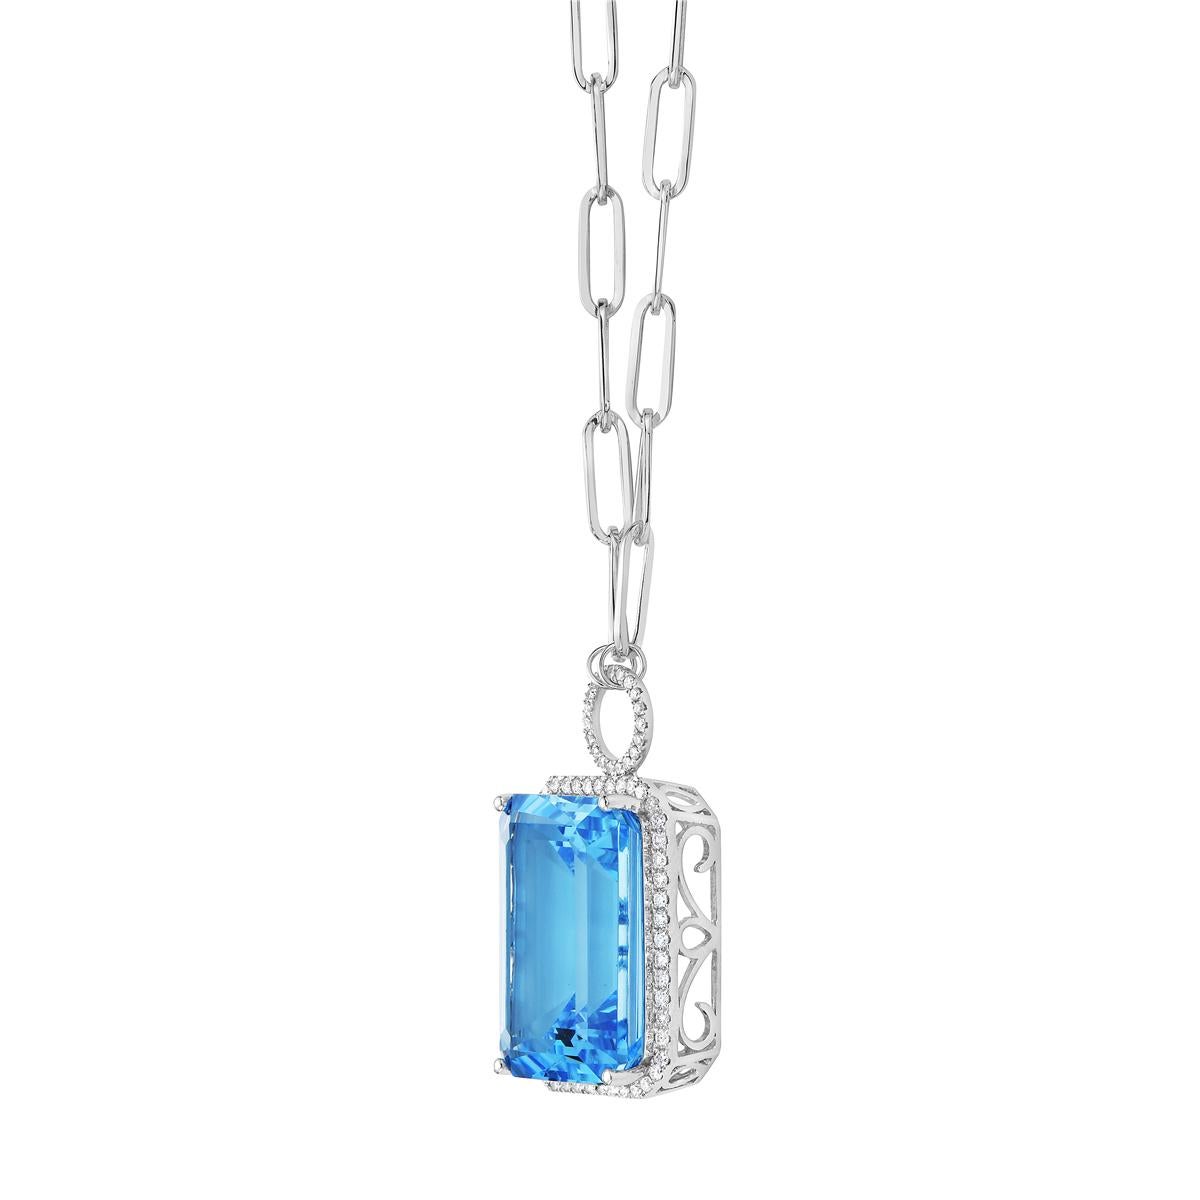 Avec cet exquis collier semi-précieux en topaze bleue suisse et diamant, le style et le glamour sont à l'honneur. Ce collier 14 carats à taille coussin est composé de 3,3 grammes d'or, d'une topaze bleu ciel totalisant 29,57 carats, et est entouré